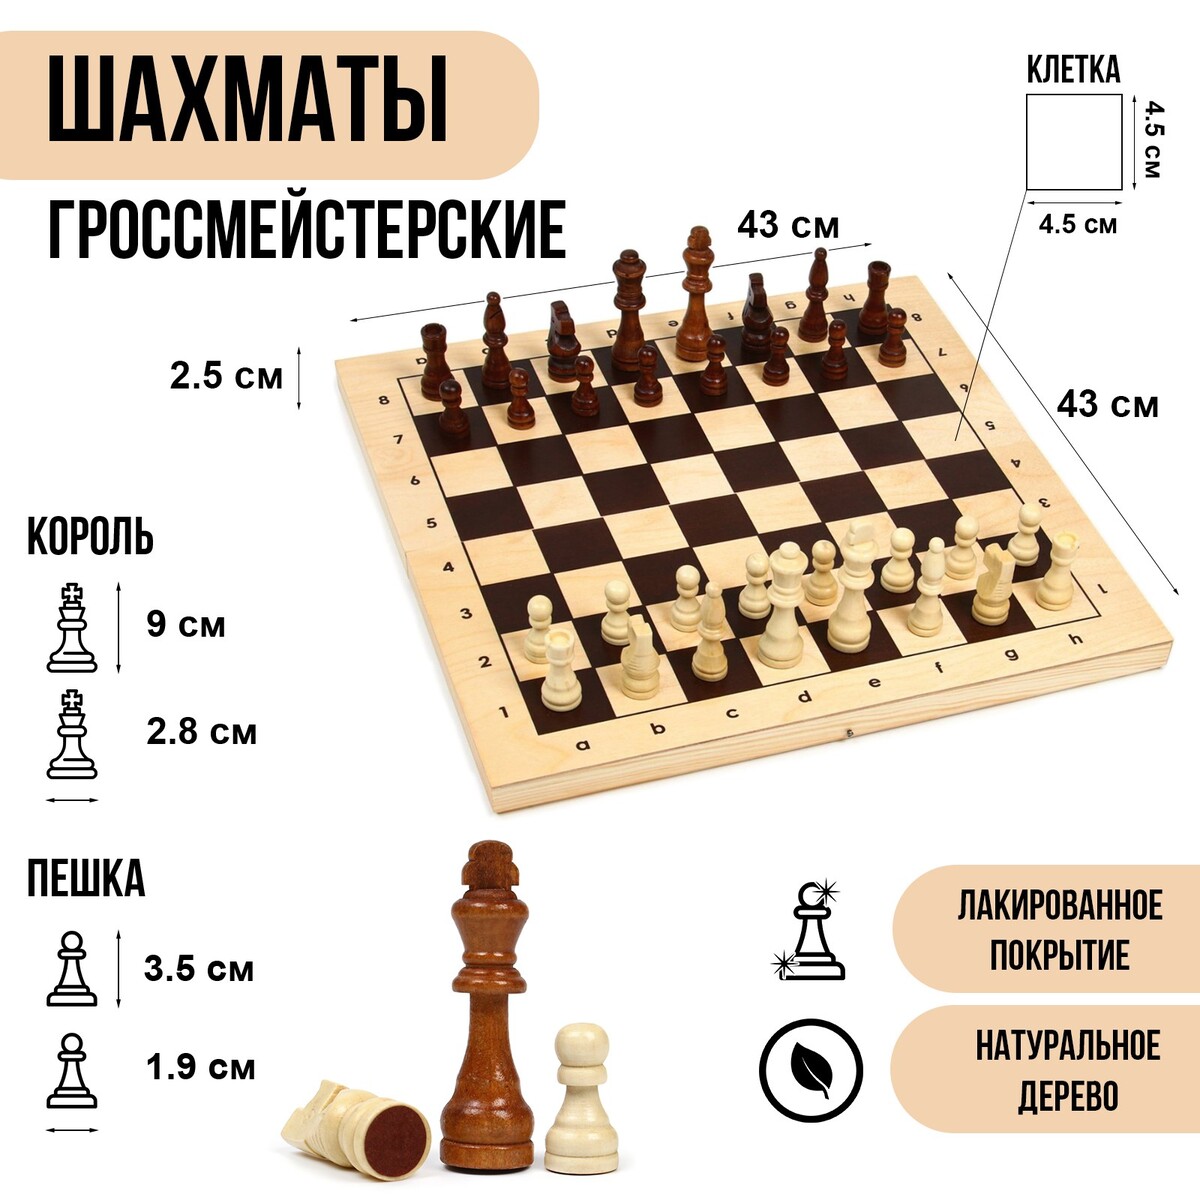 Шахматы деревянные гроссмейстерские, турнирные 43 х 43 см, король h-9 см, пешка h-3.5 см король лир